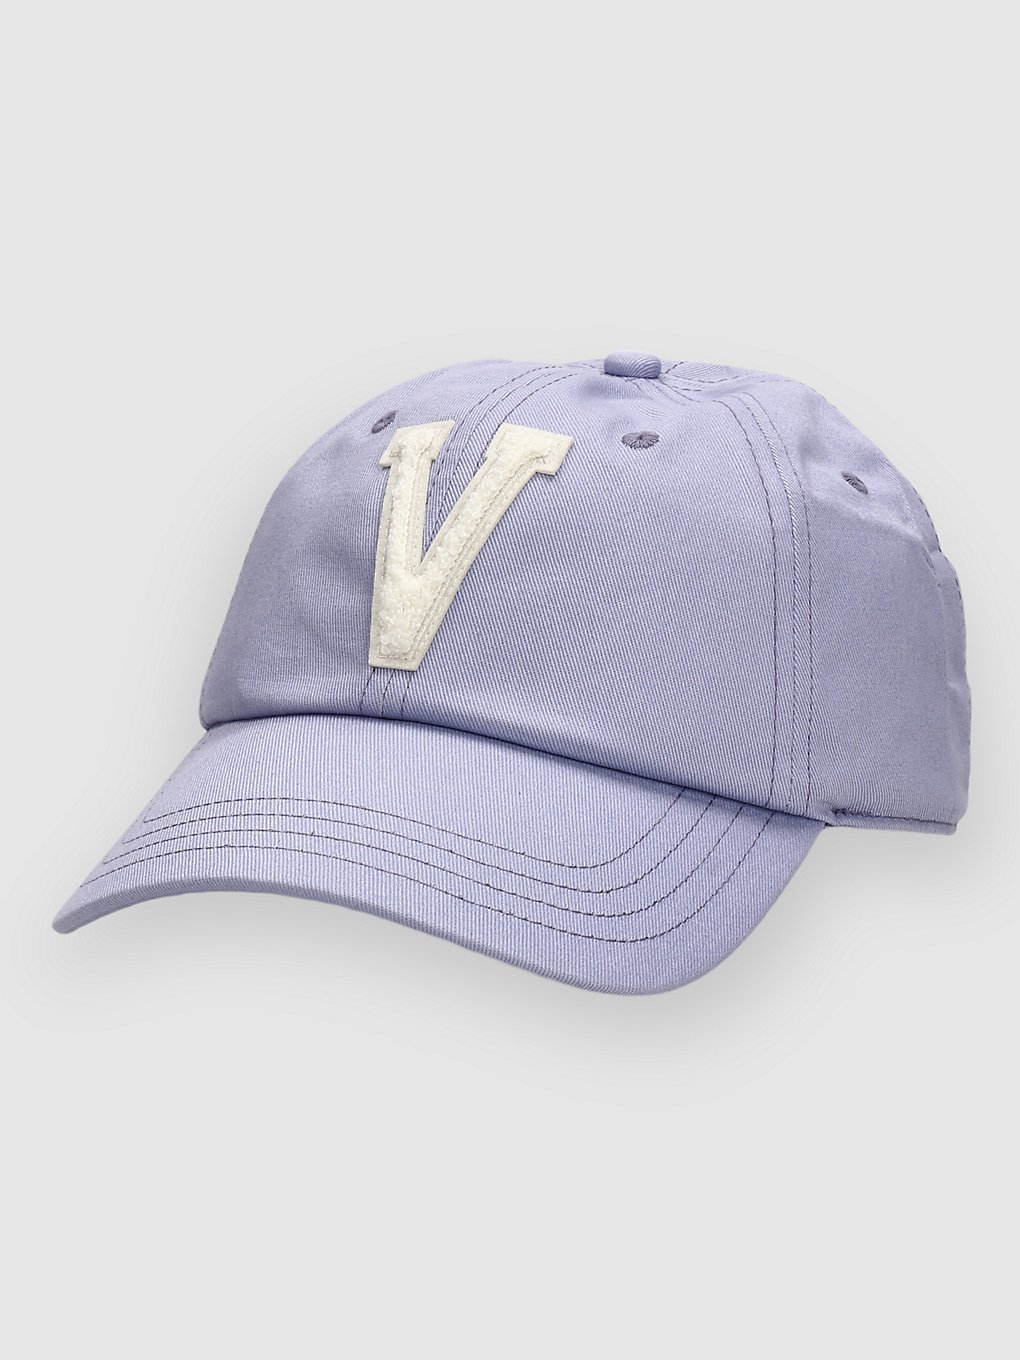 Vans Flying V Cap sweet lavender kaufen